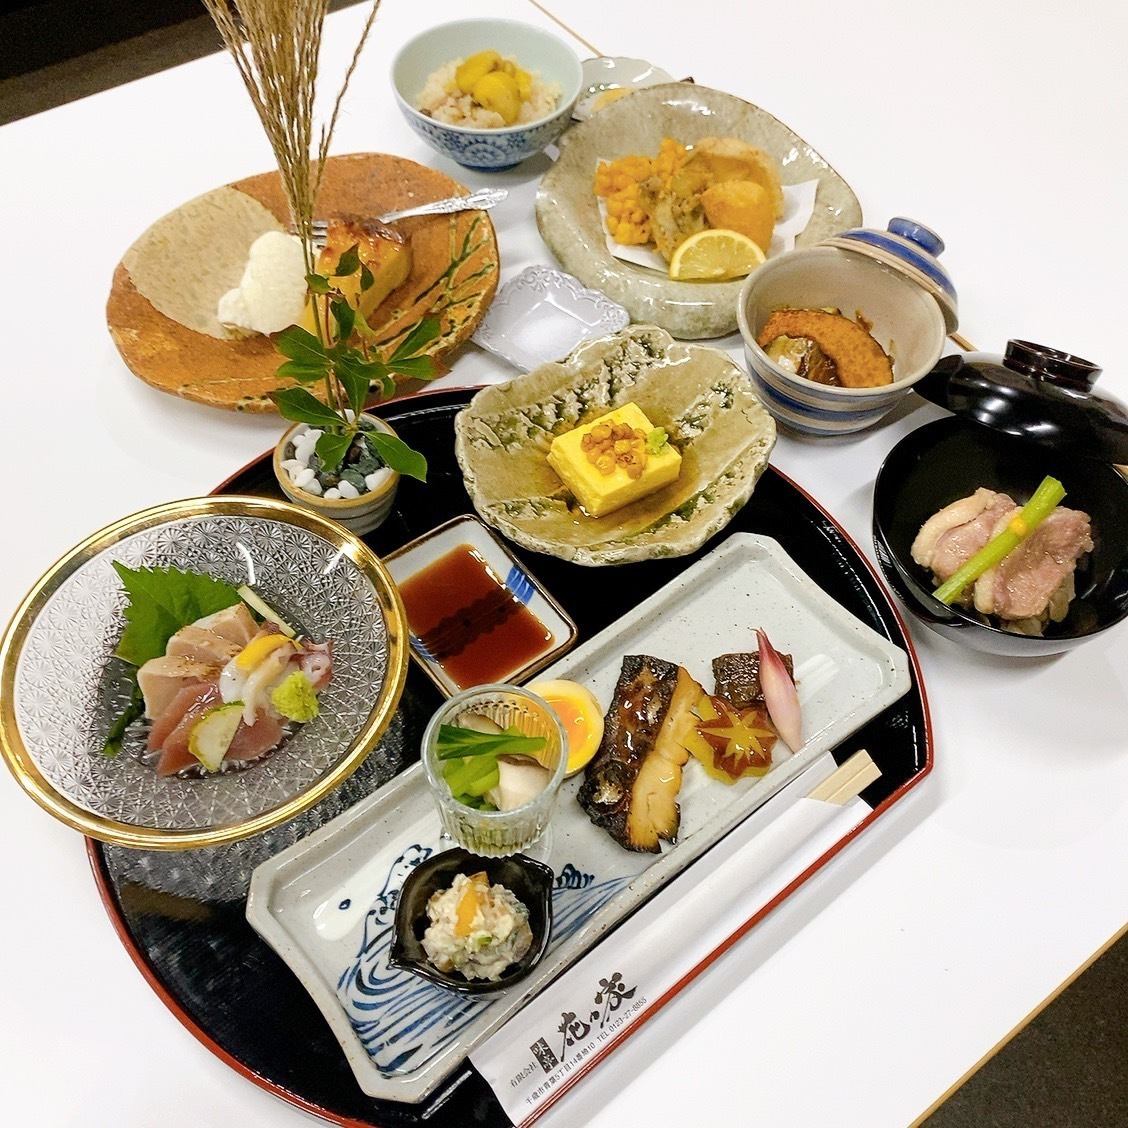 可以輕鬆享用鰻魚、懷石料理、套餐等的日式餐廳。我們還有私人房間！